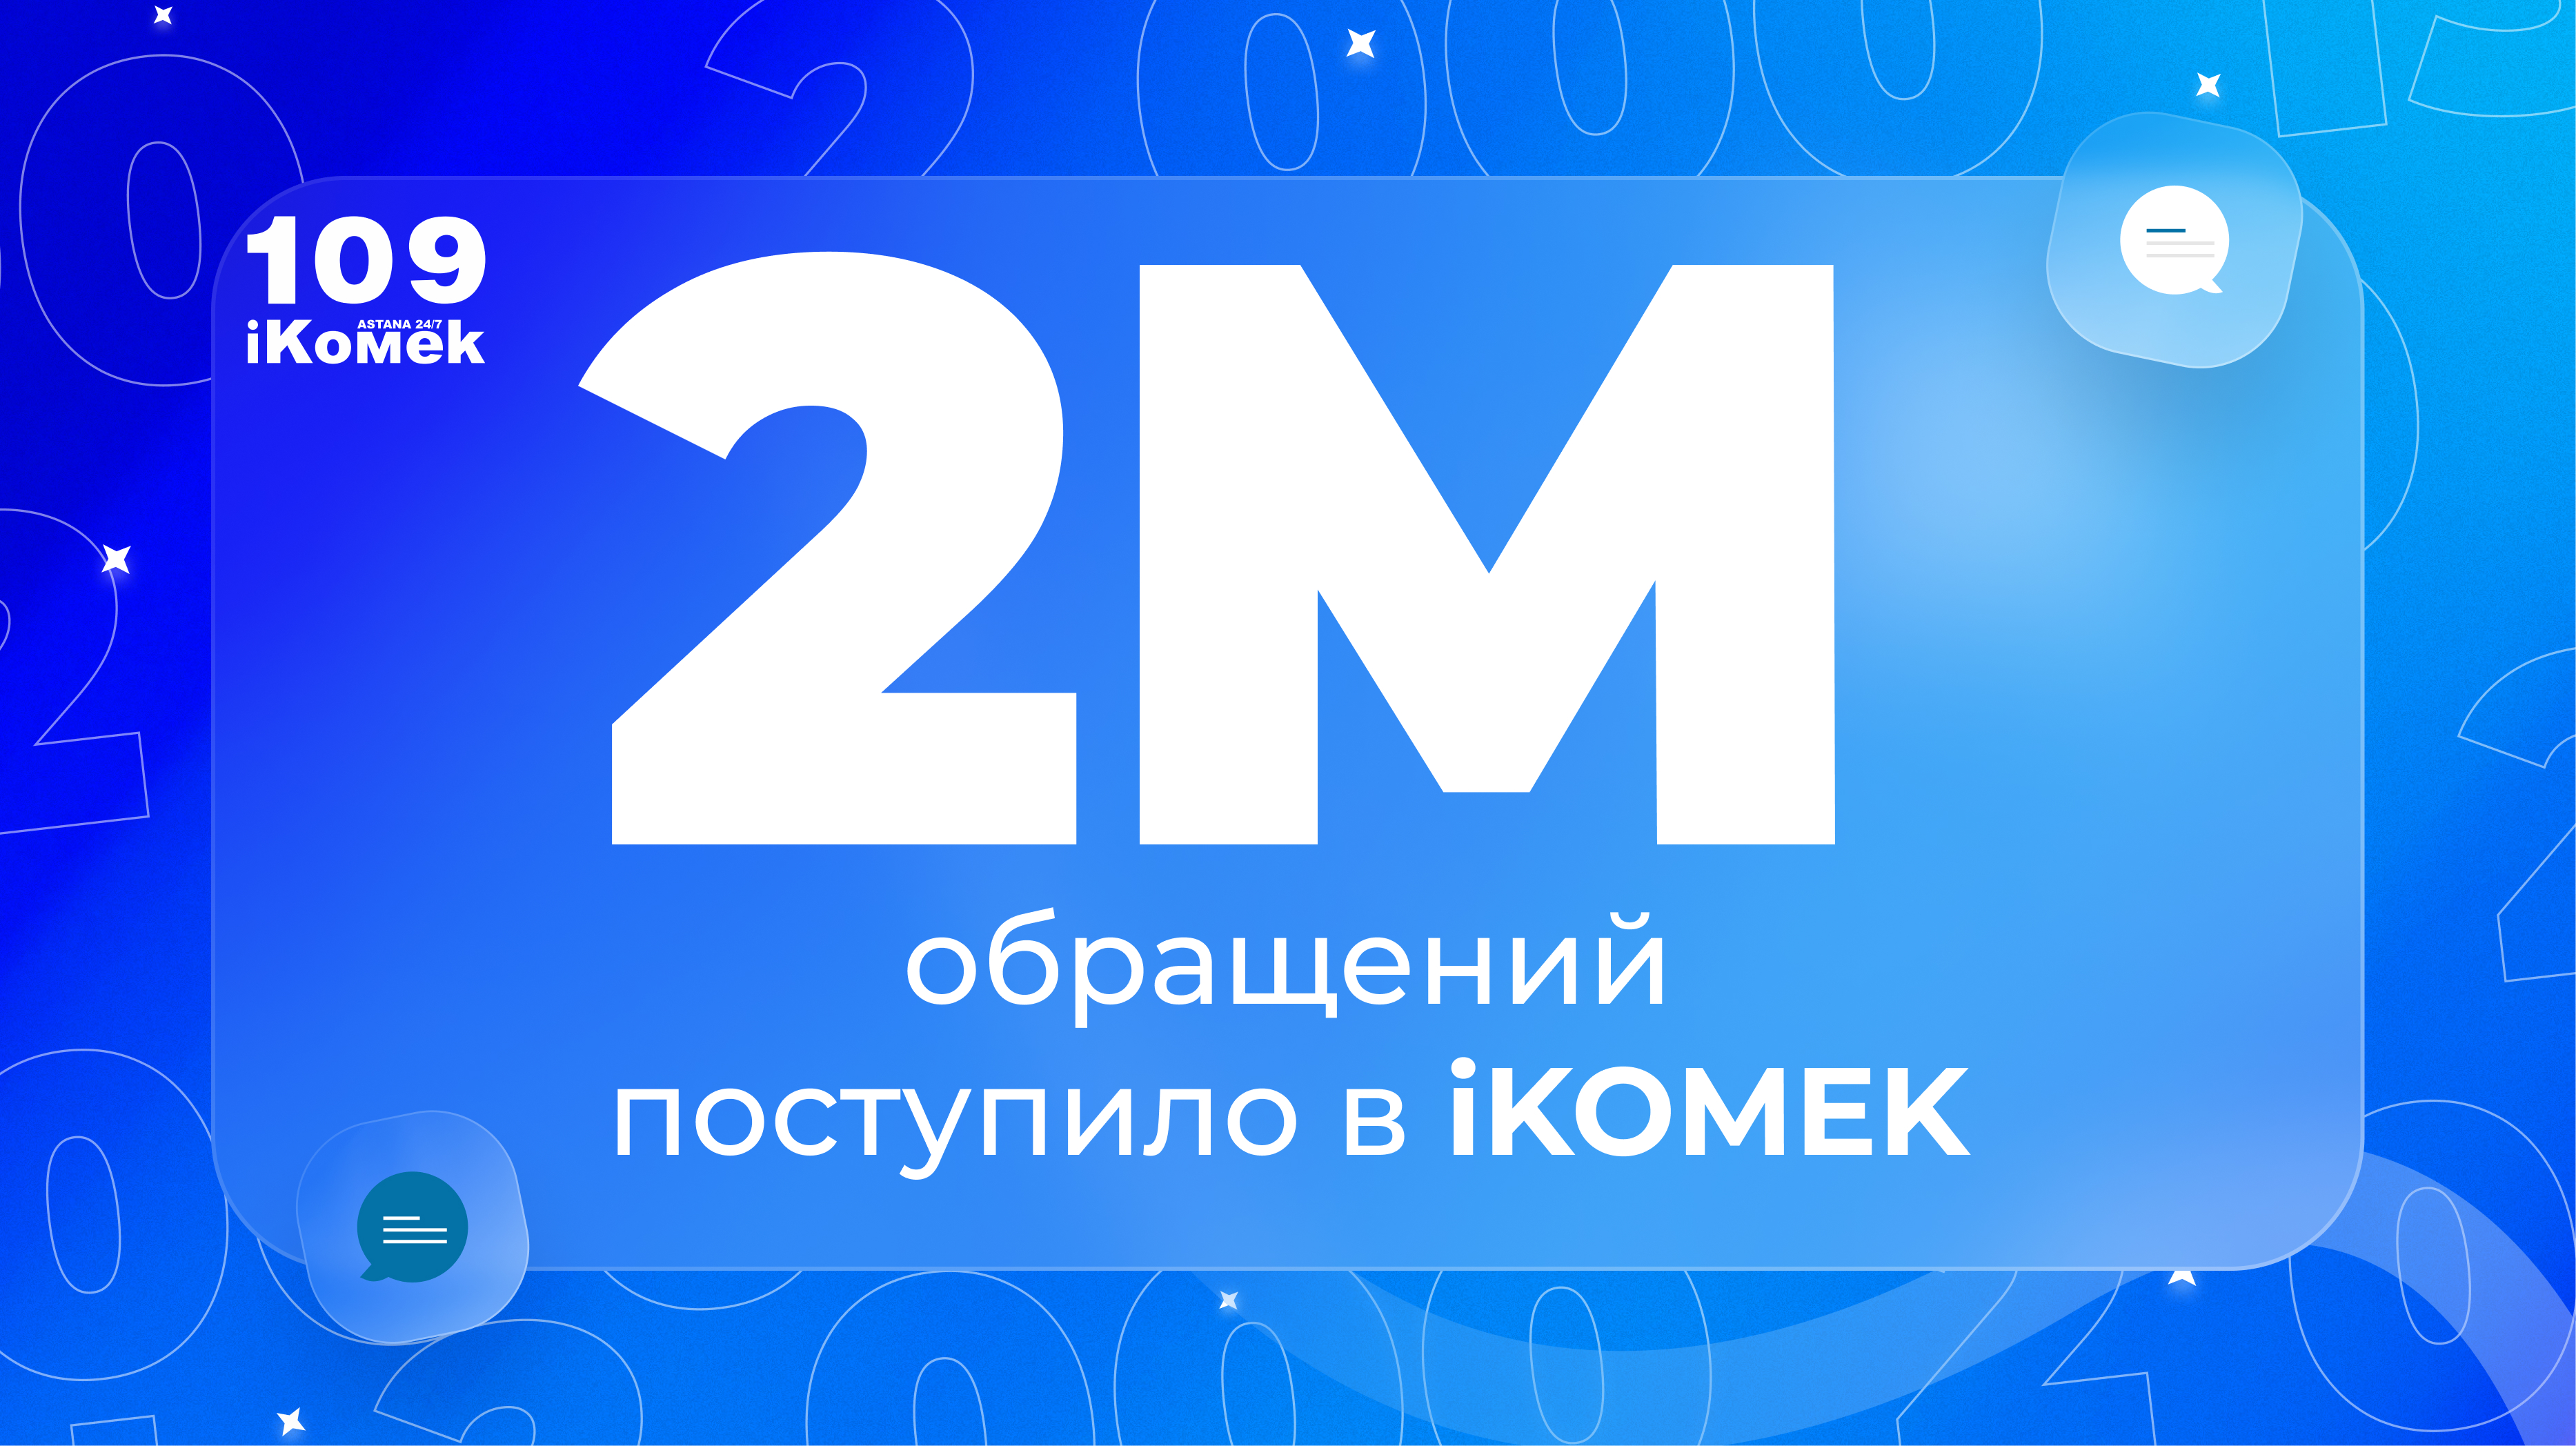 В столичный центр iKOMEK109 поступило два миллиона обращений с начала года